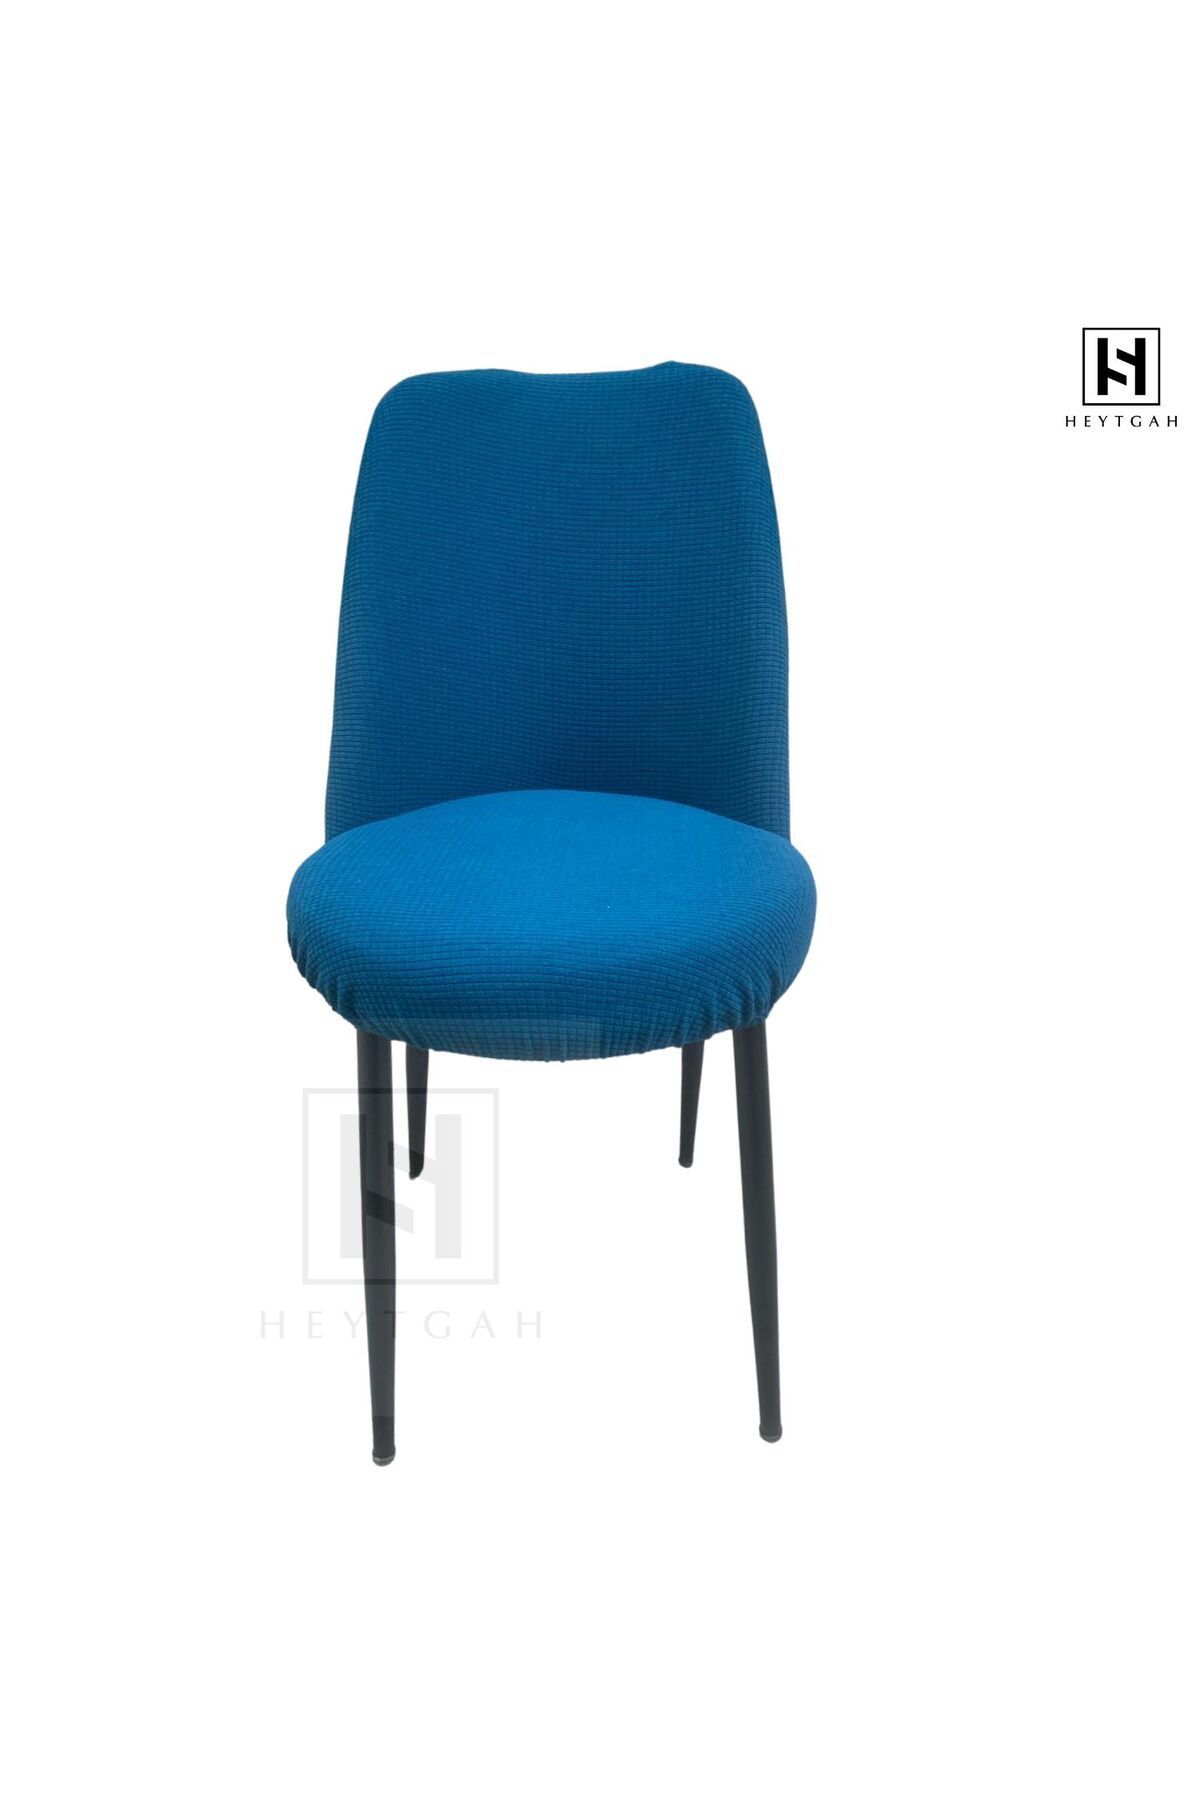 HEYTGAH Pitikare Sandalye Kılıfı Retro Oval Sandalye Örtüsü Sandalye Kılıfı_1 Adet petrol mavi